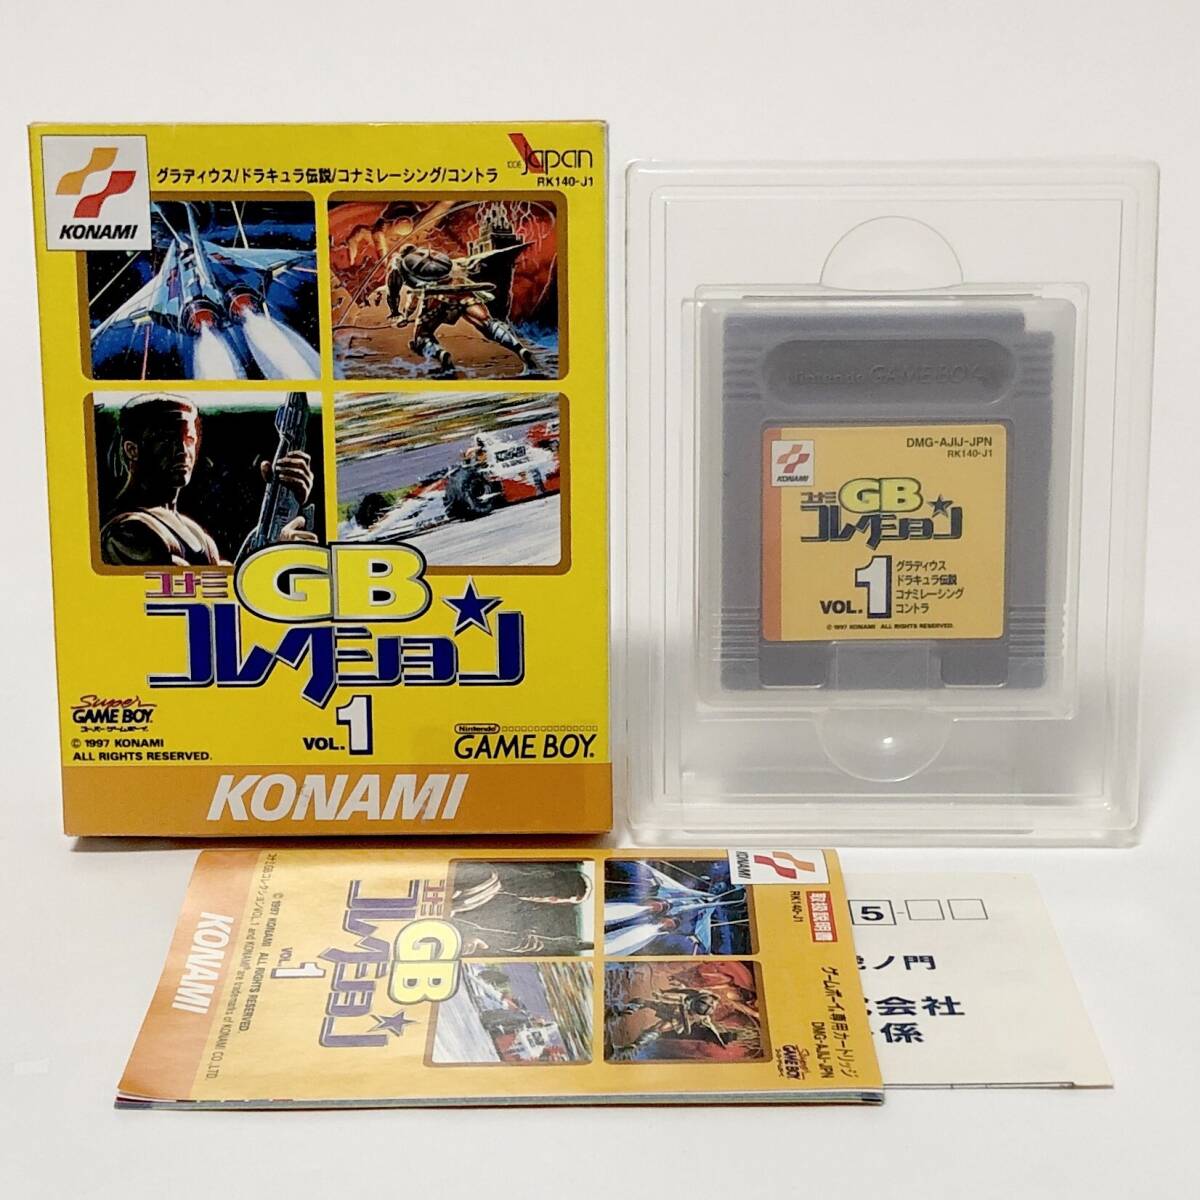 ゲームボーイ コナミ GBコレクション Vol.1 箱説付き 痛みあり 動作確認済み Nintendo GameBoy Konami GB Collection Vol.1 CIB Tested